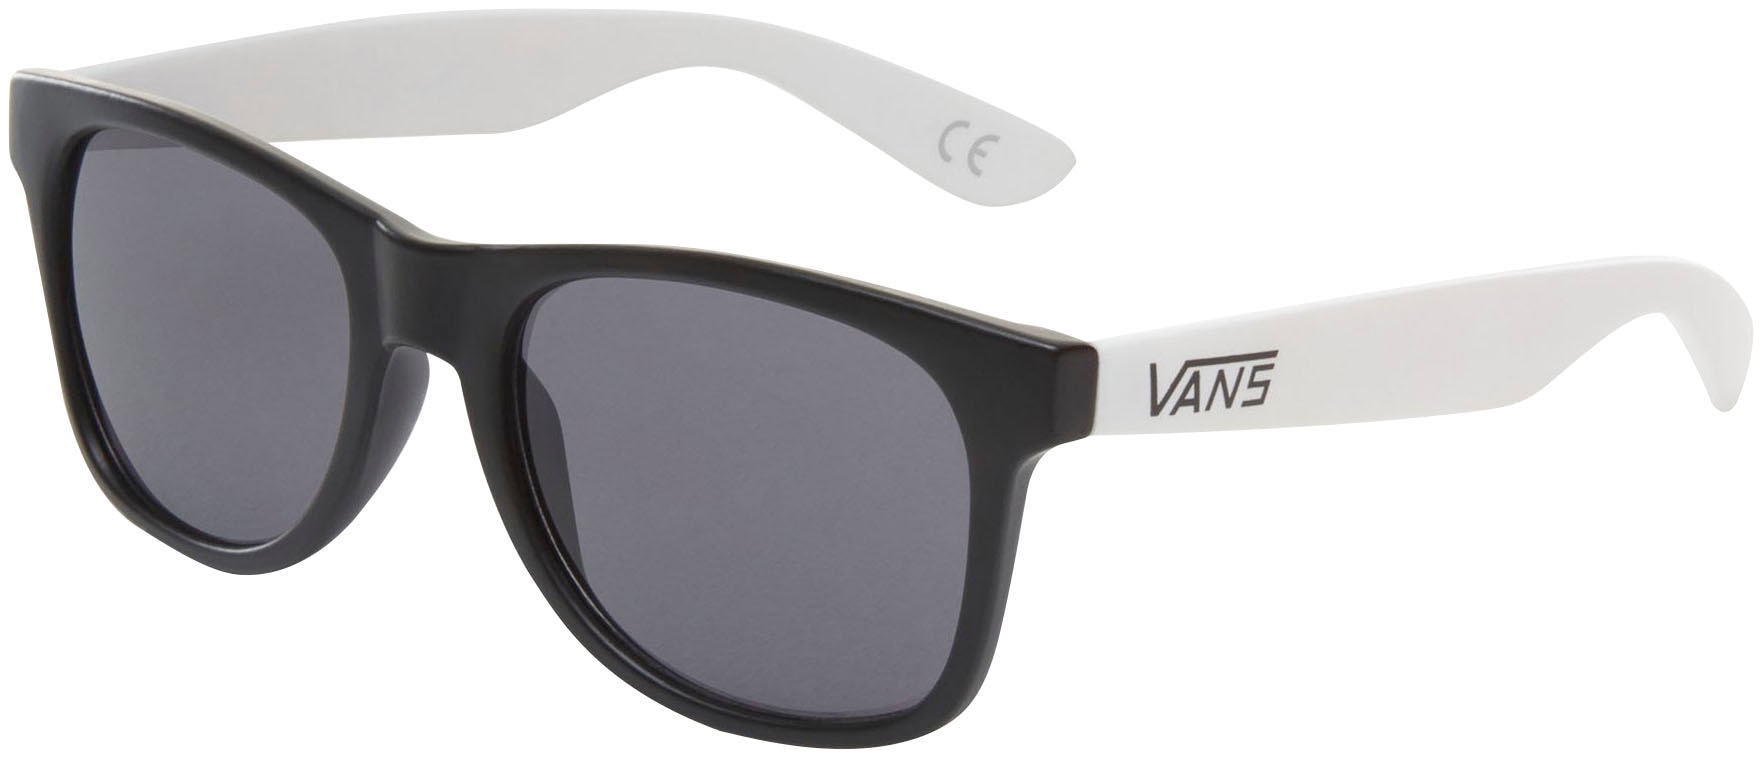 4 »SPICOLI kaufen Sonnenbrille SHADES« Vans